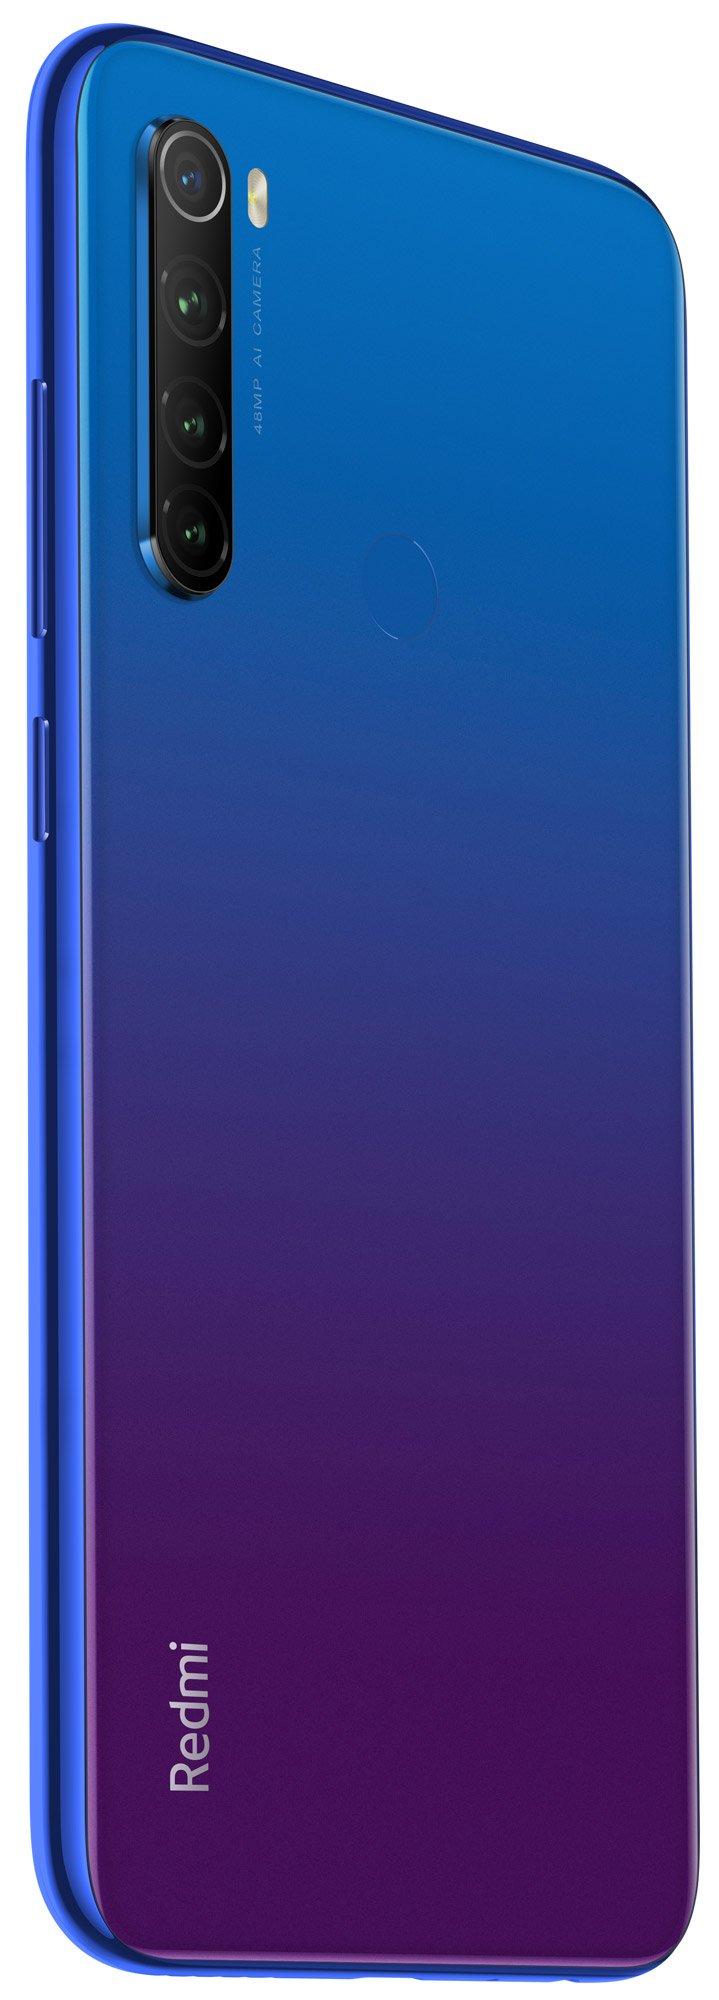 Цена Смартфон Xiaomi Redmi Note 8T 3/32Gb Blue